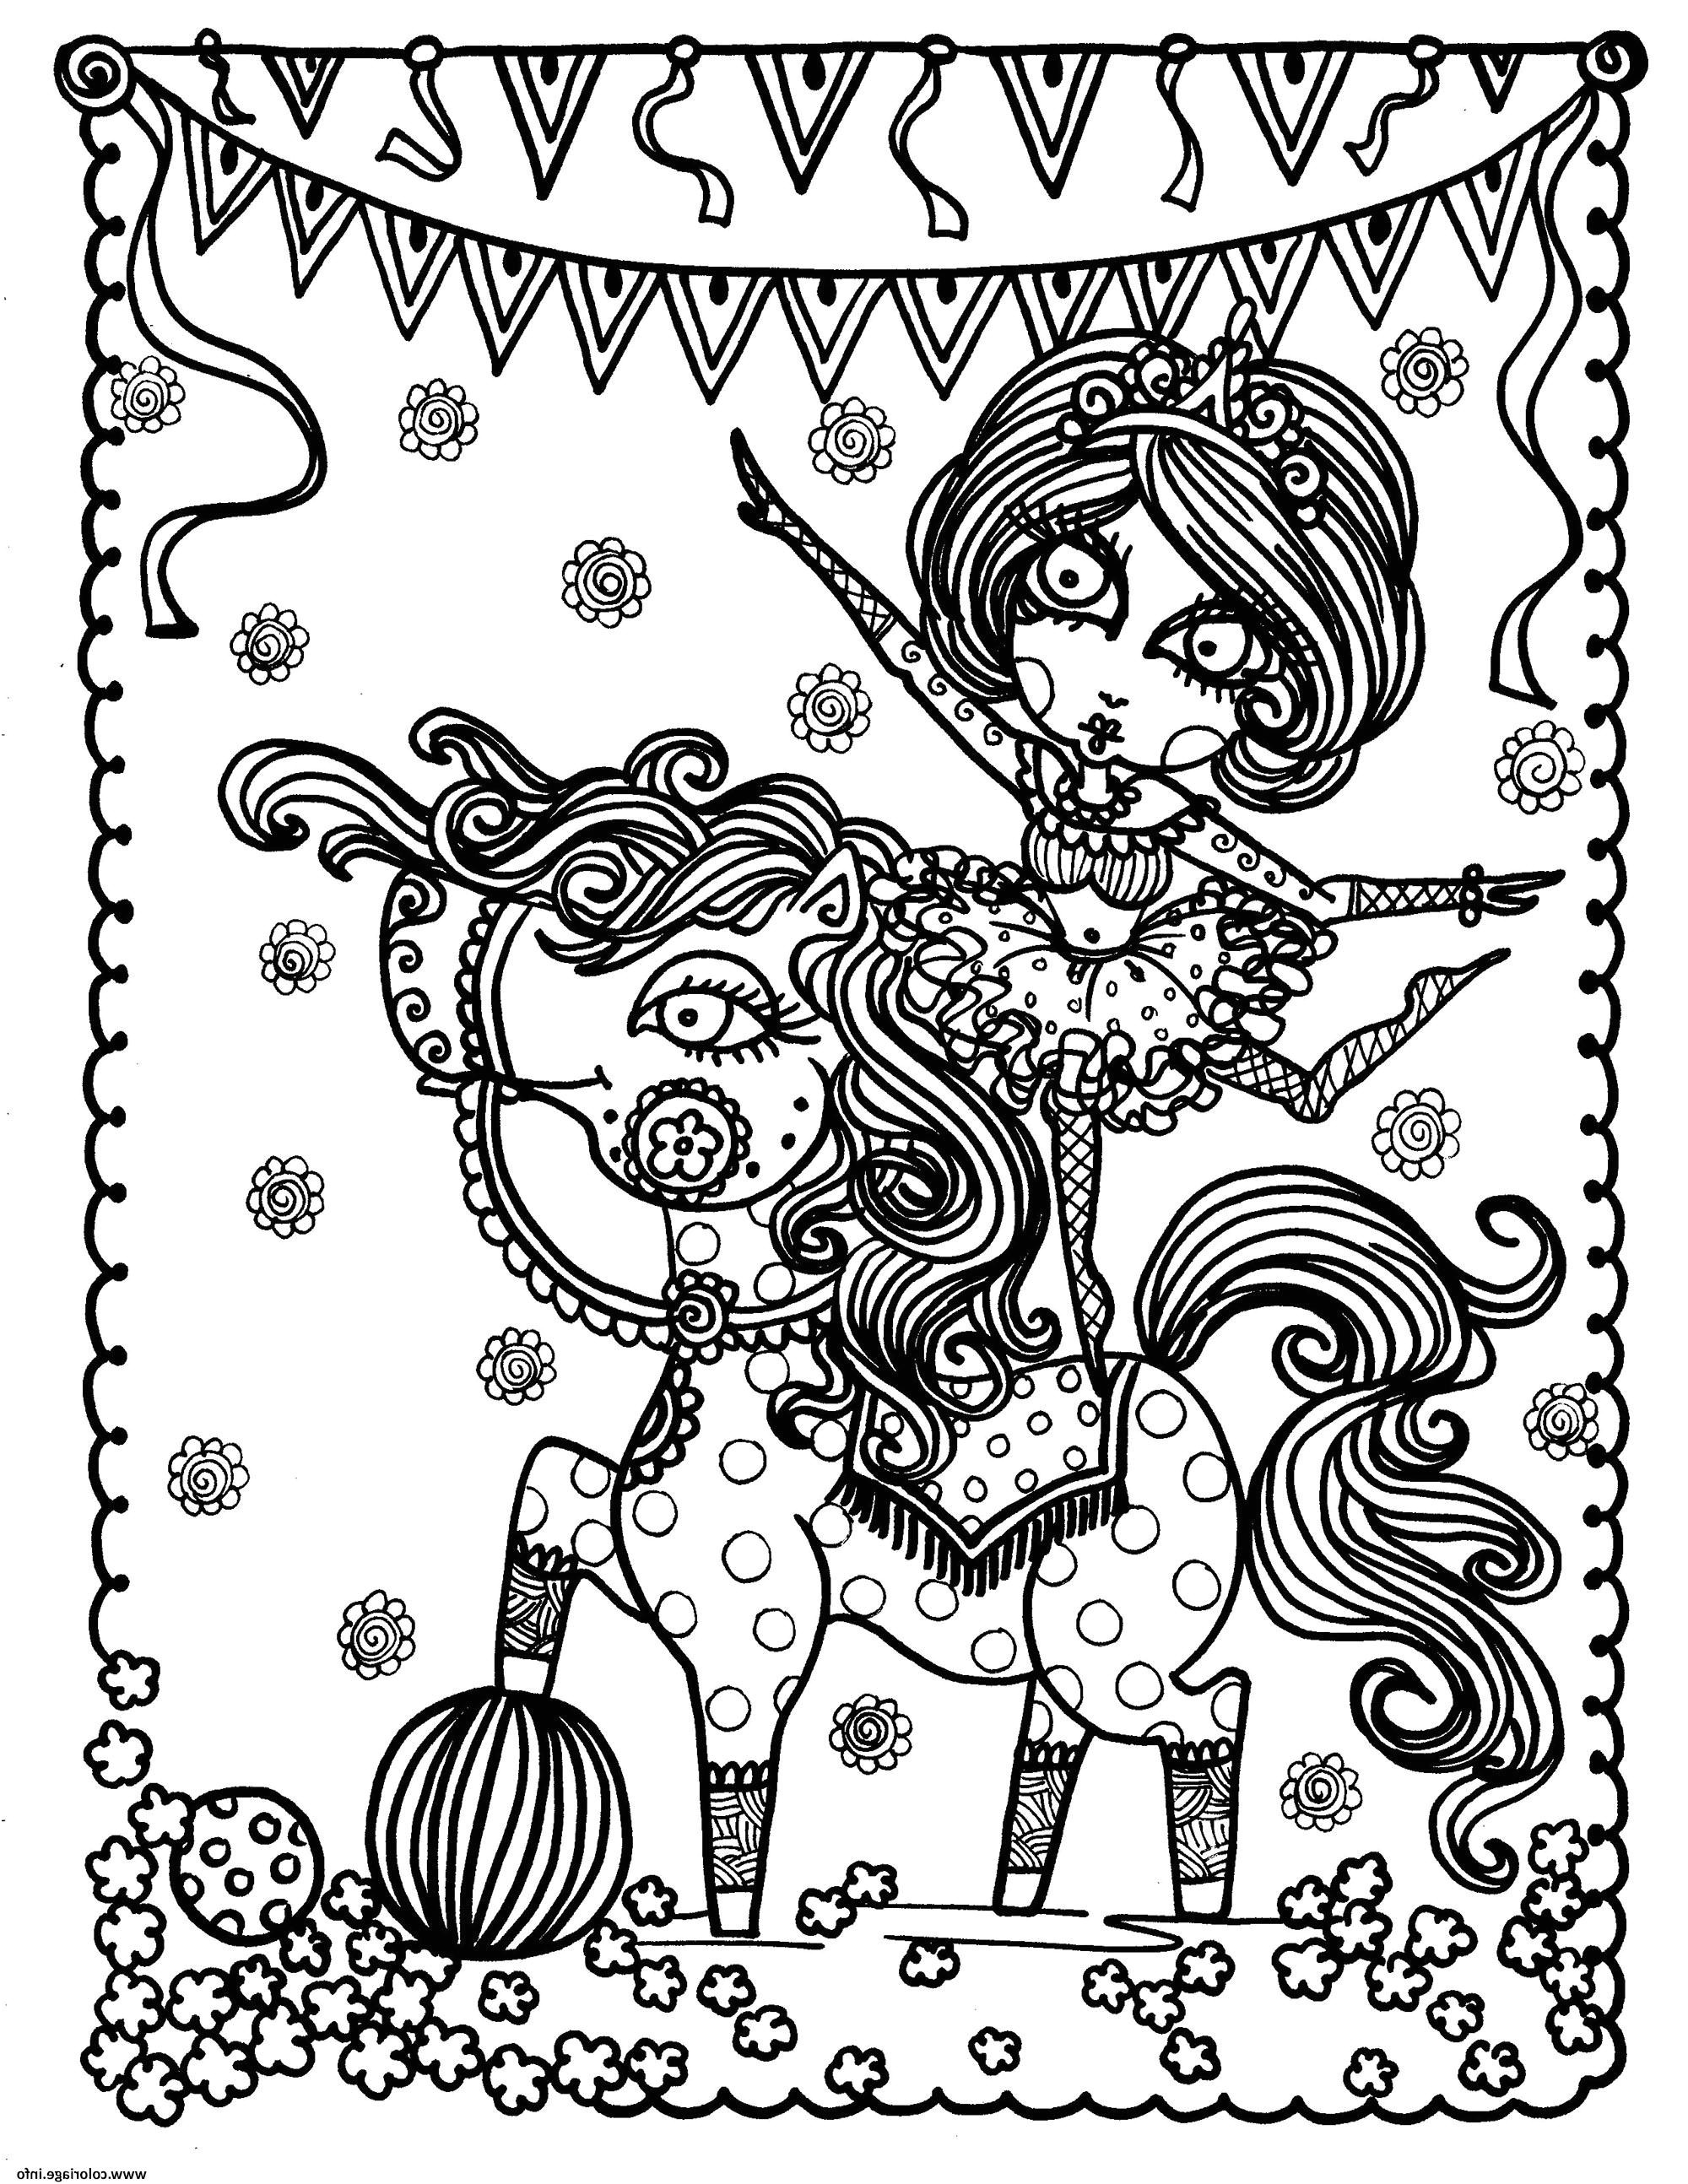 jeux de coloriage de mandala gratuit en ligne coloriage adulte jeune acrobate sur un cheval par deborah muller dessin